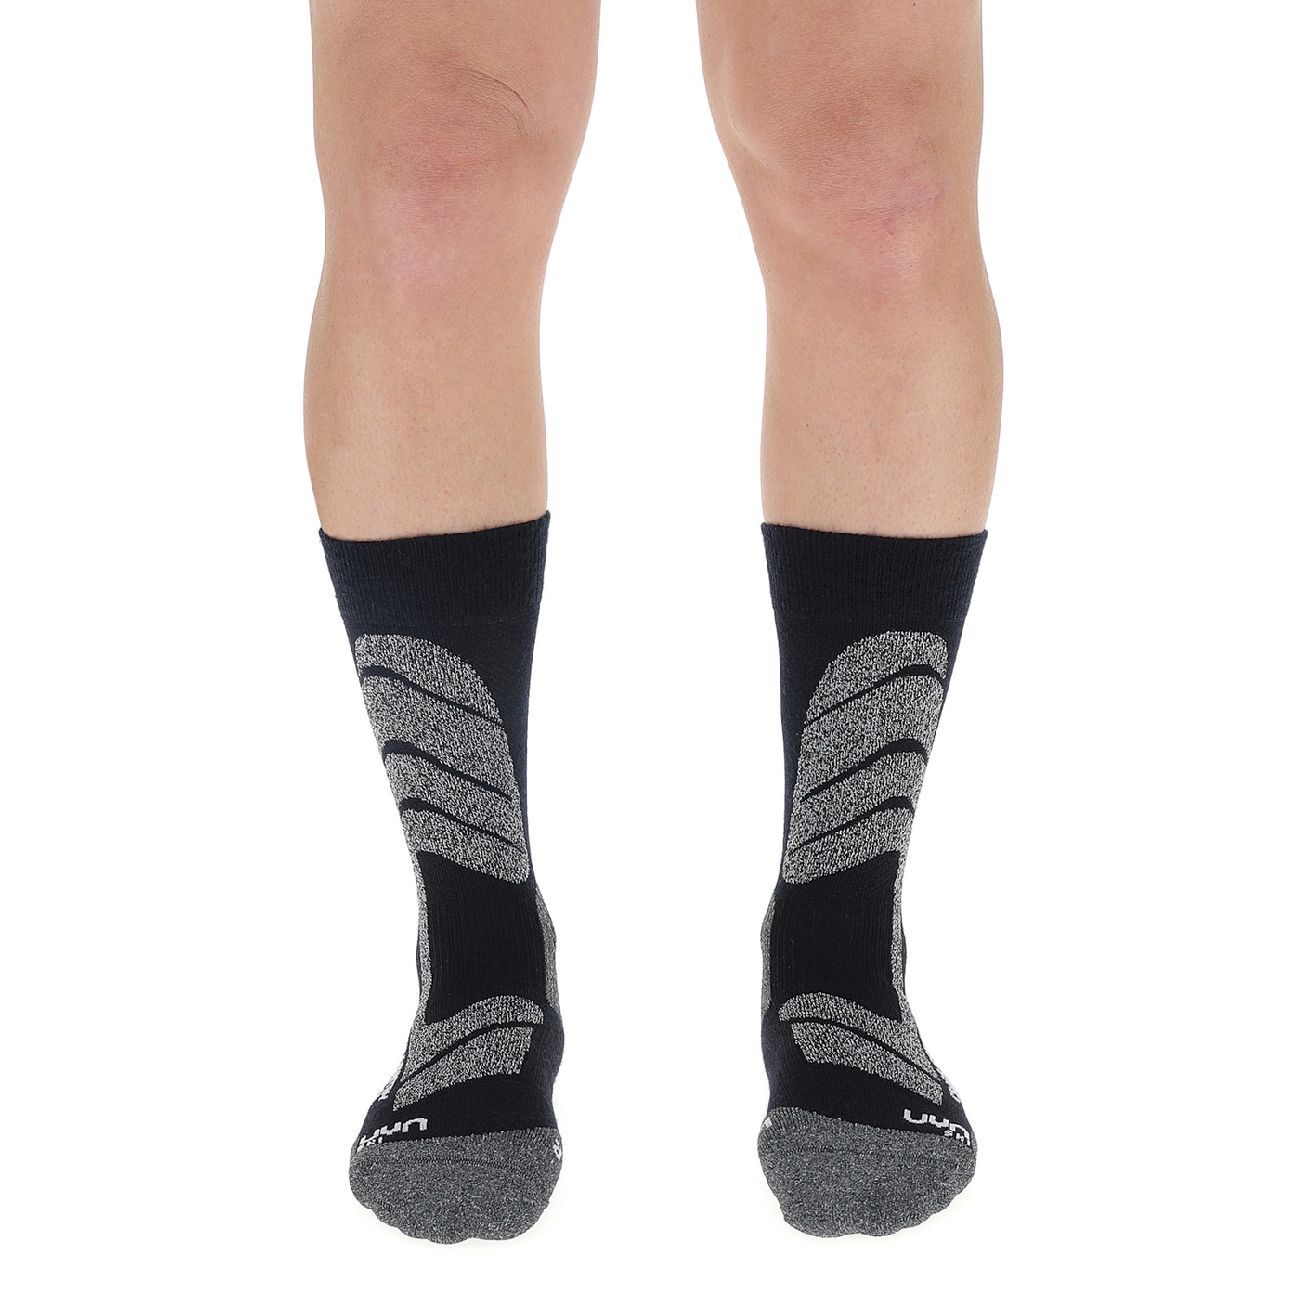 Uyn Ski Cross Country Socks - Skisokken - Heren